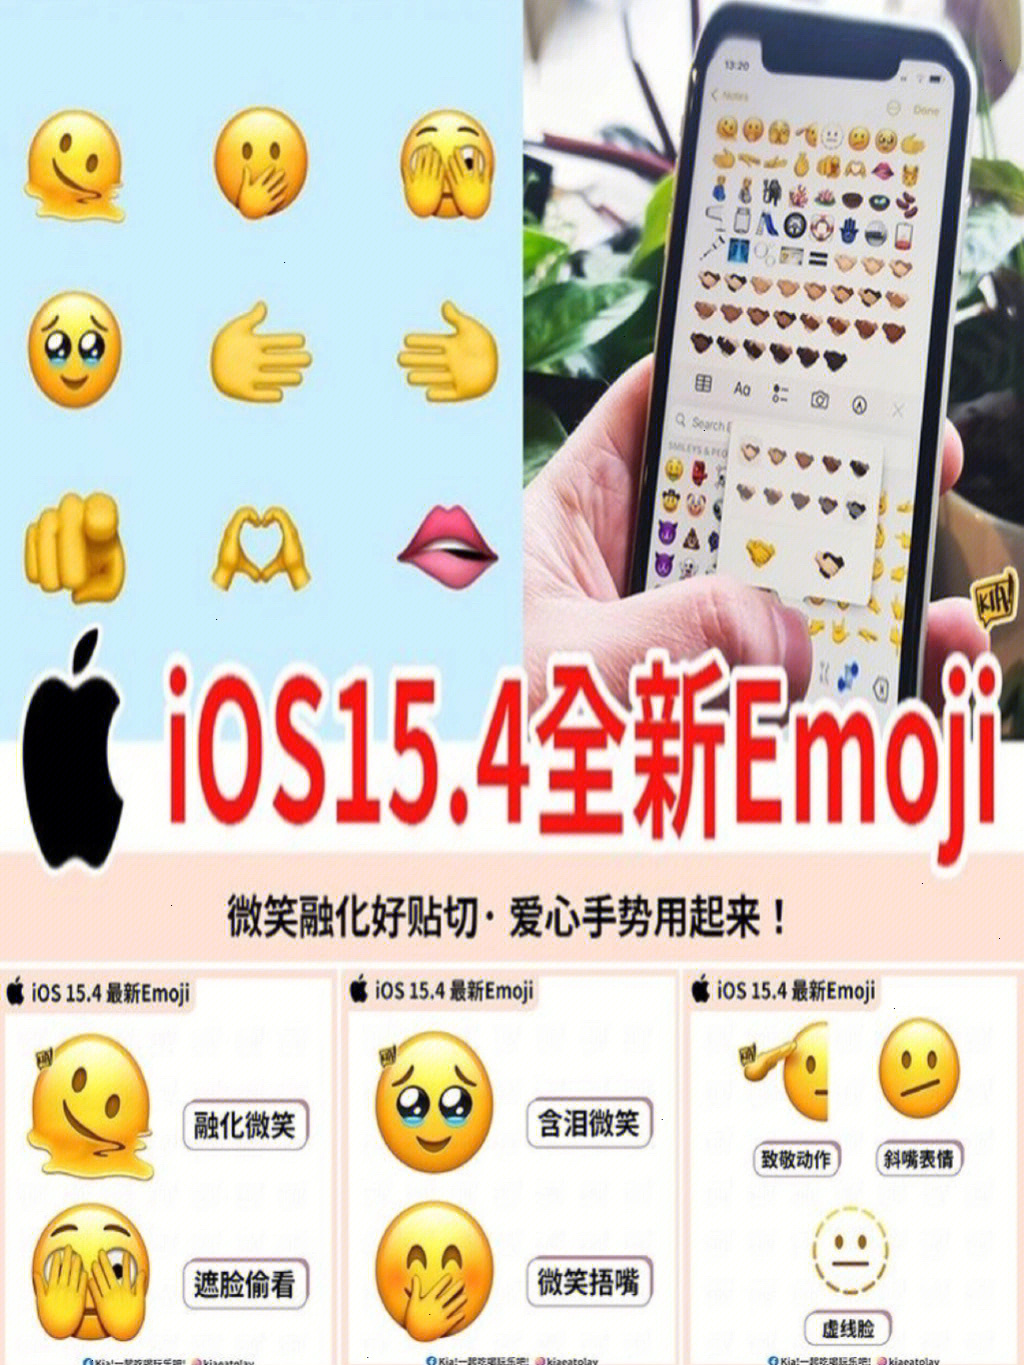 这一次新增38款emoji表情符号,共超过 112种emoji变化!